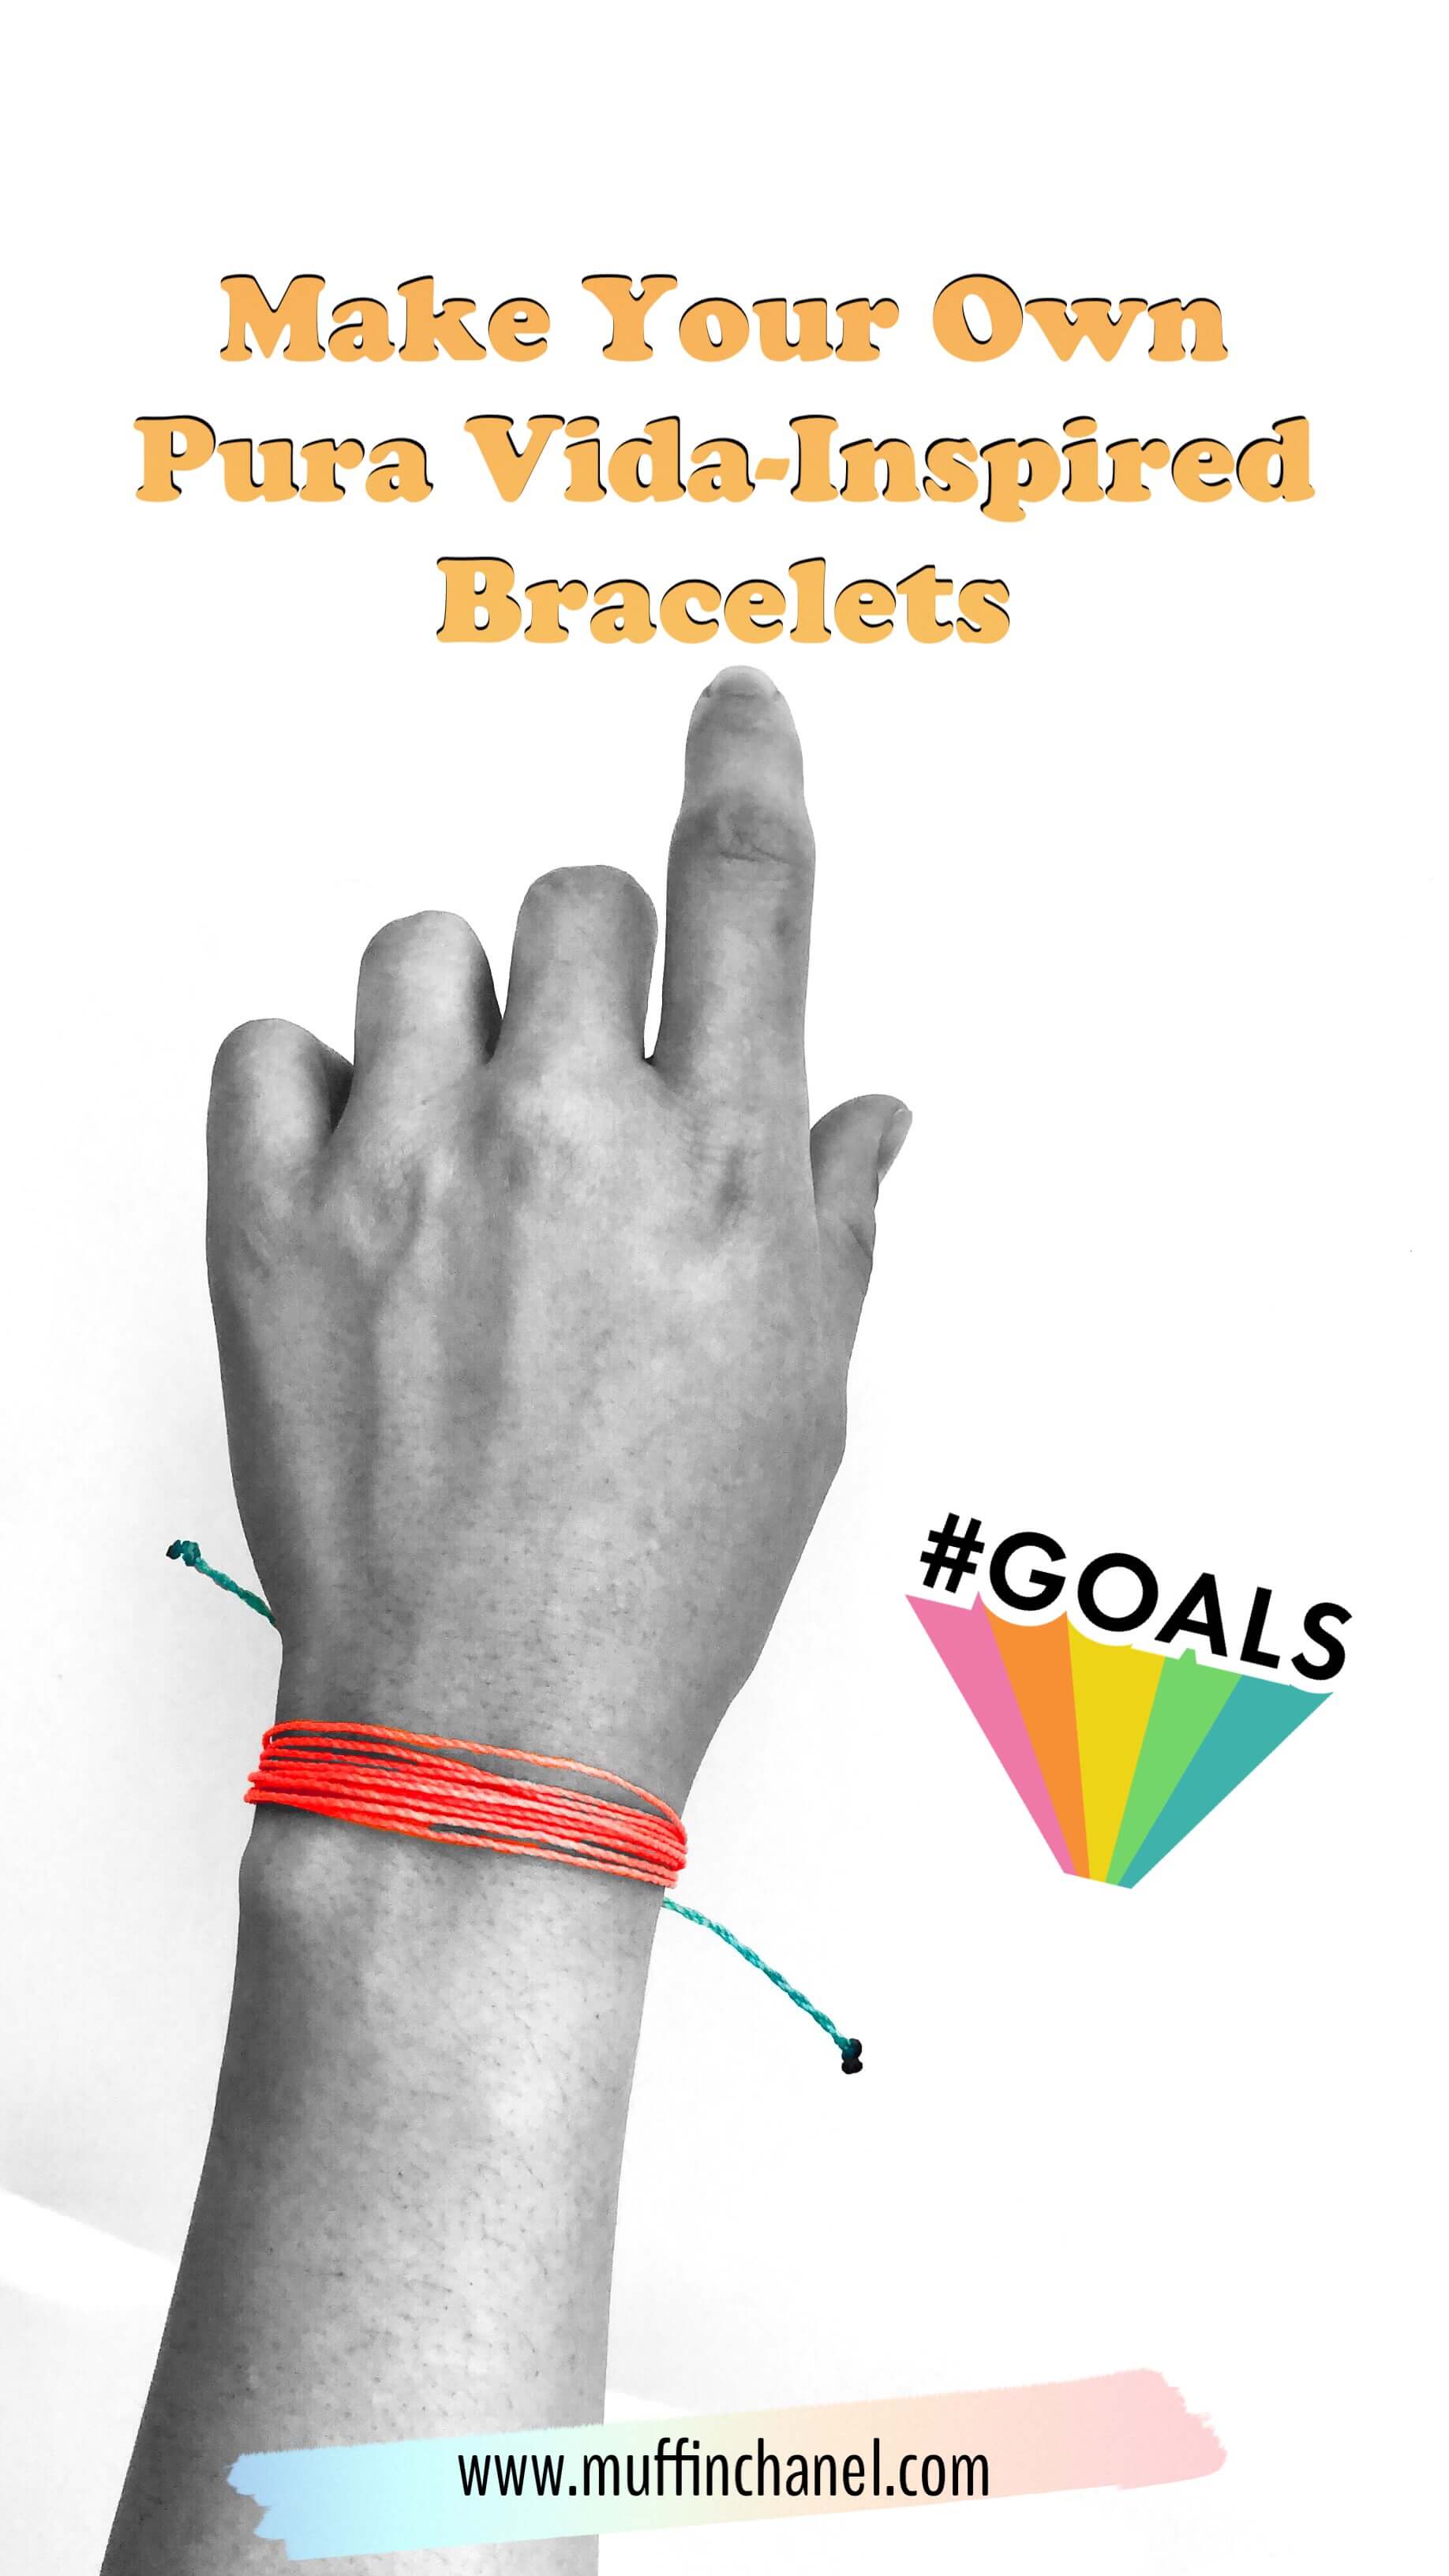 8 strings, 4 colors | Bracelet template, Friendship bracelet patterns,  Friendship articles